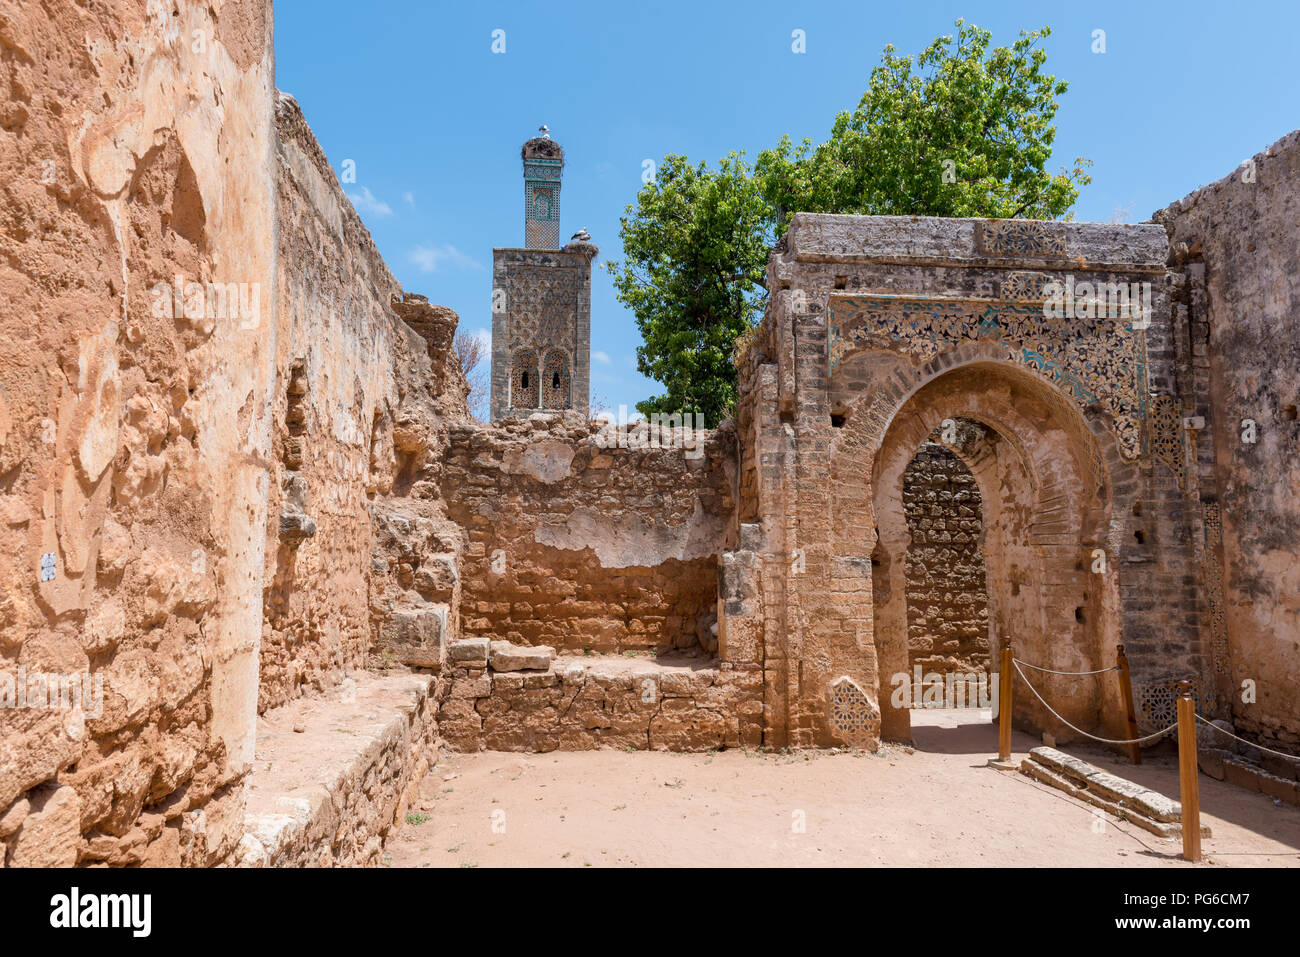 Mezquita en la antigua necrópolis y asentamiento romano de Chellah, en las afueras de Rabat, Marruecos Foto de stock